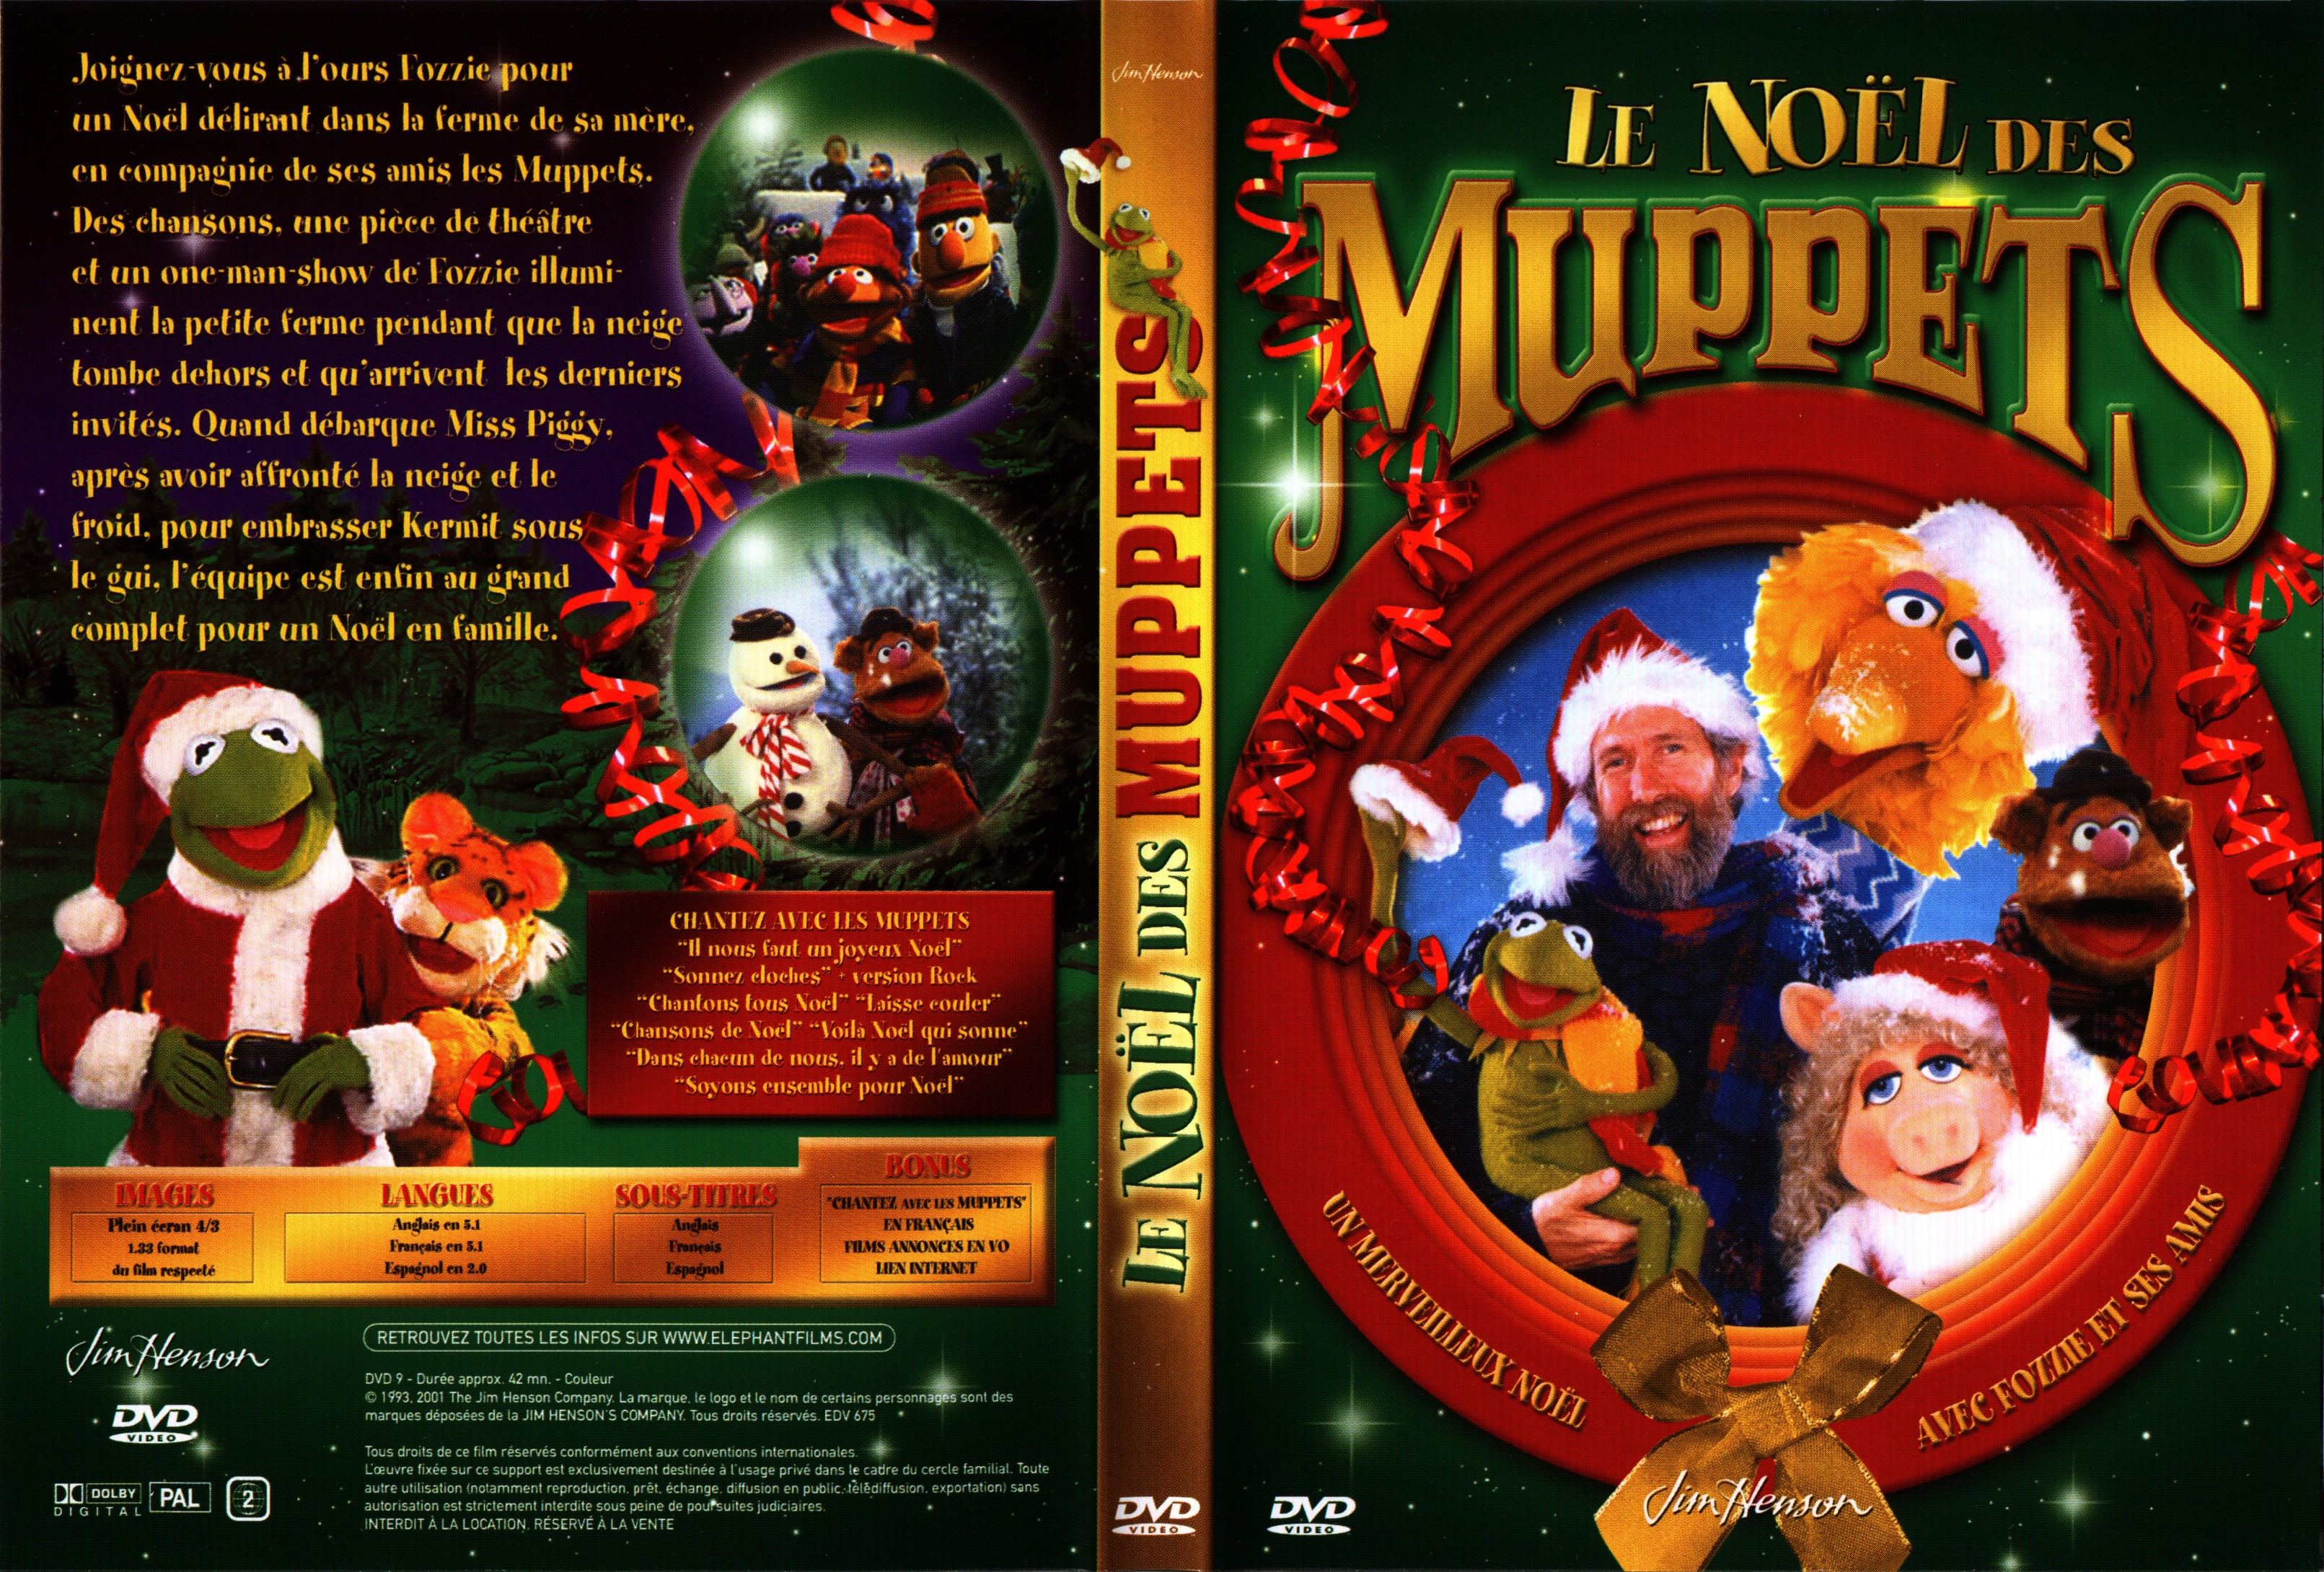 Jaquette DVD Le noel des muppets